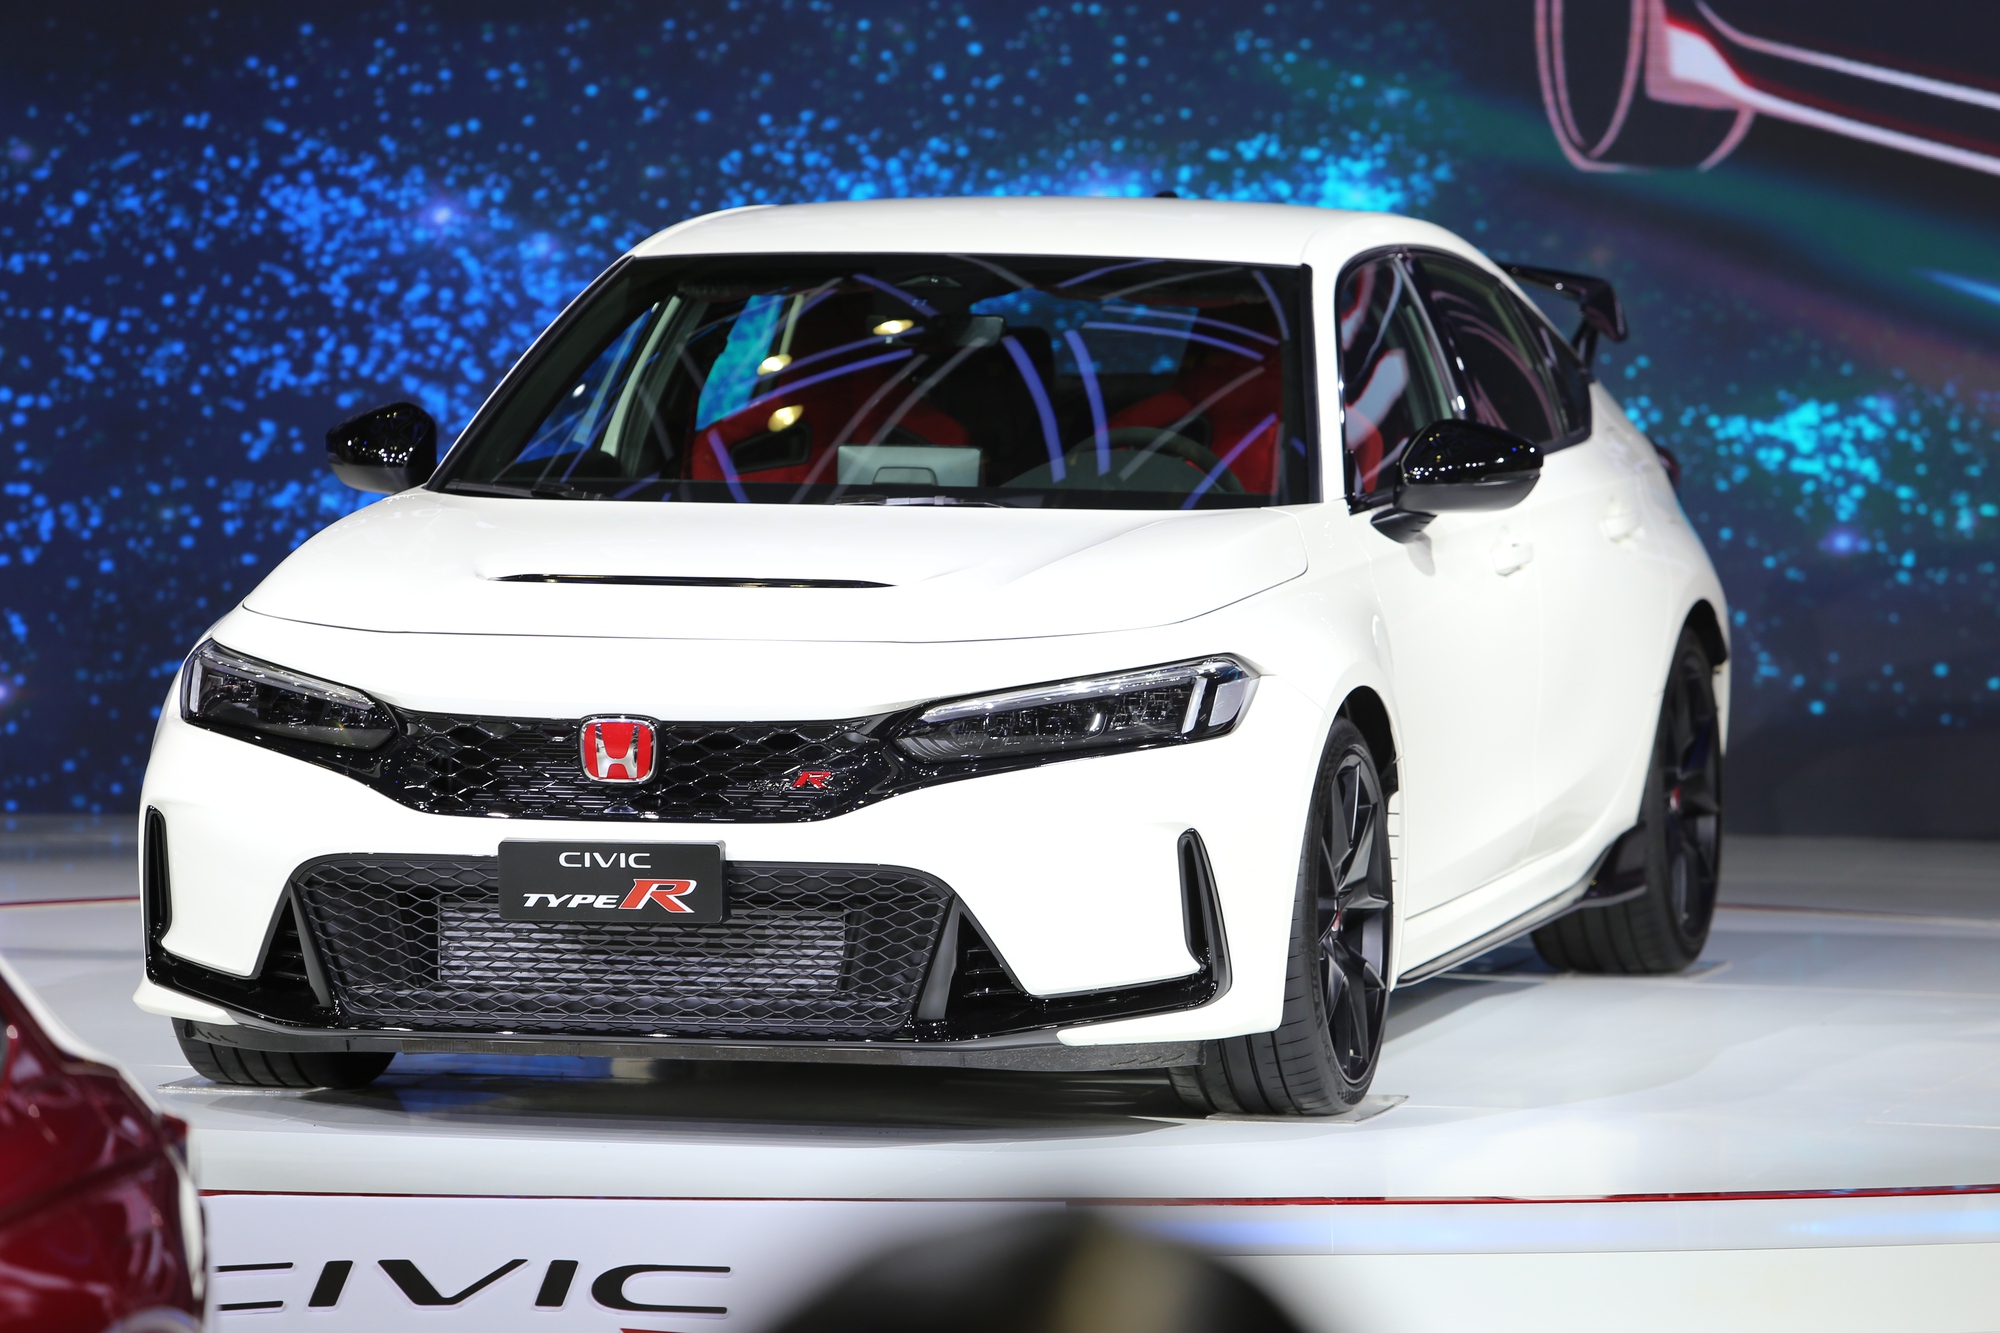 Bắt gặp Honda Civic Type R tại trạm đăng kiểm khí thải: Giống hệt xe trưng bày, ngày ra mắt không còn xa - Ảnh 7.